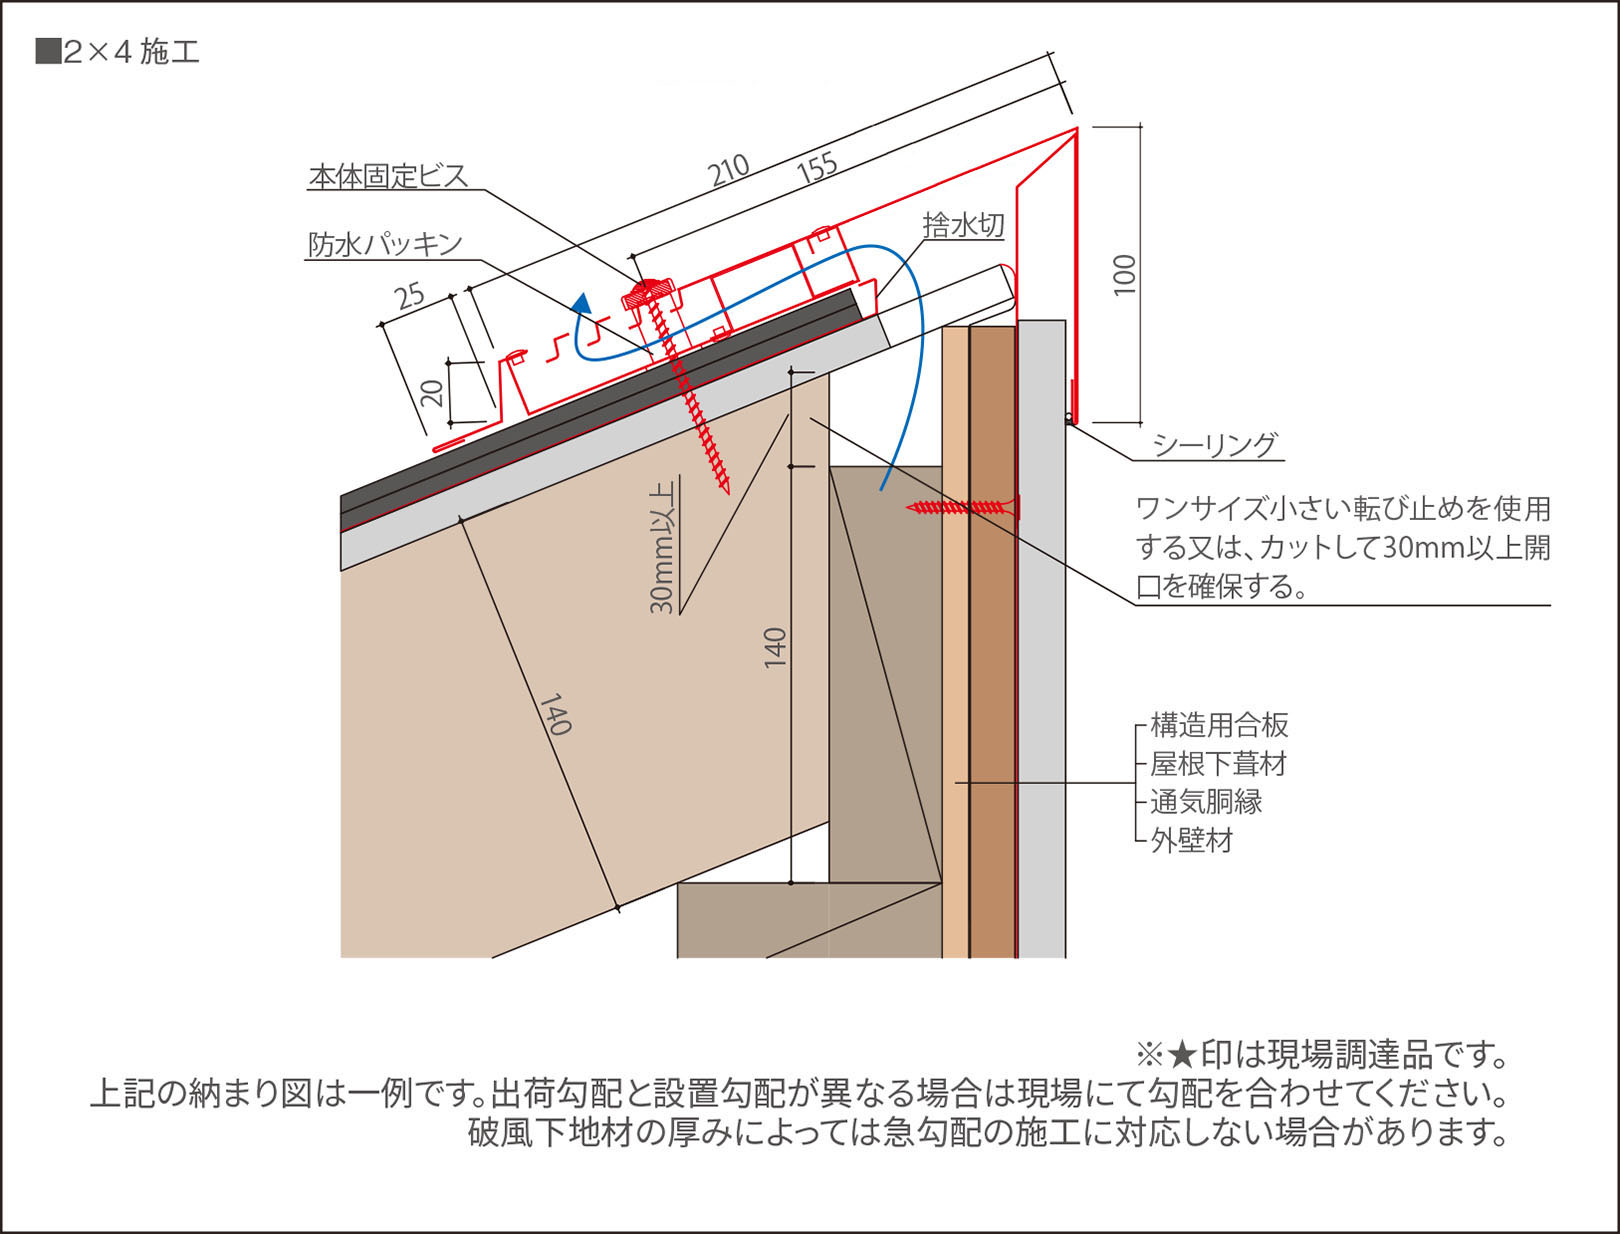 2×4工法（スレート）
壁材施工時